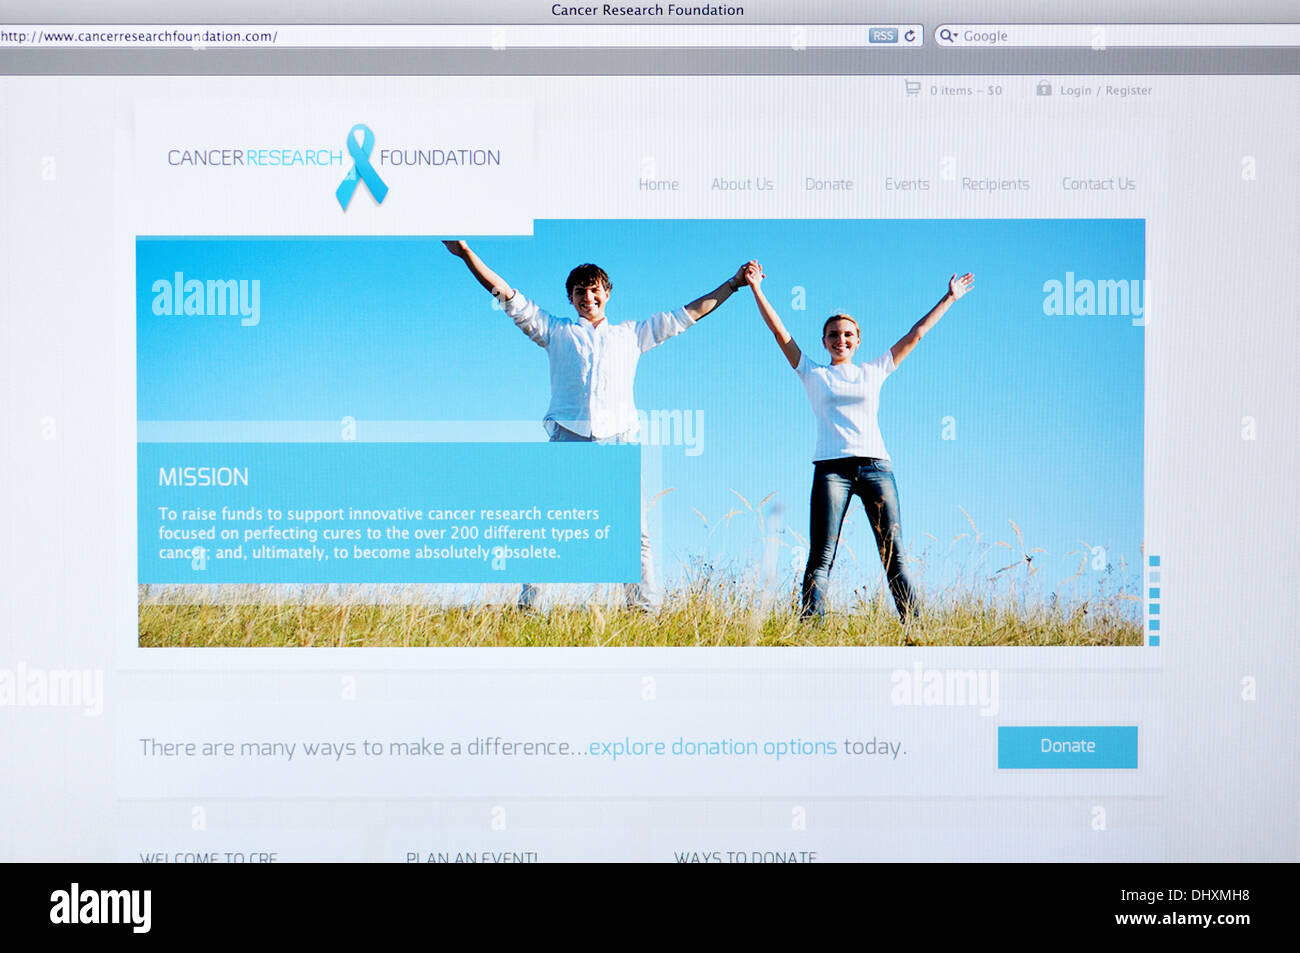 Página web de la Fundación de Investigación sobre el cáncer en la pantalla de ordenador Foto de stock